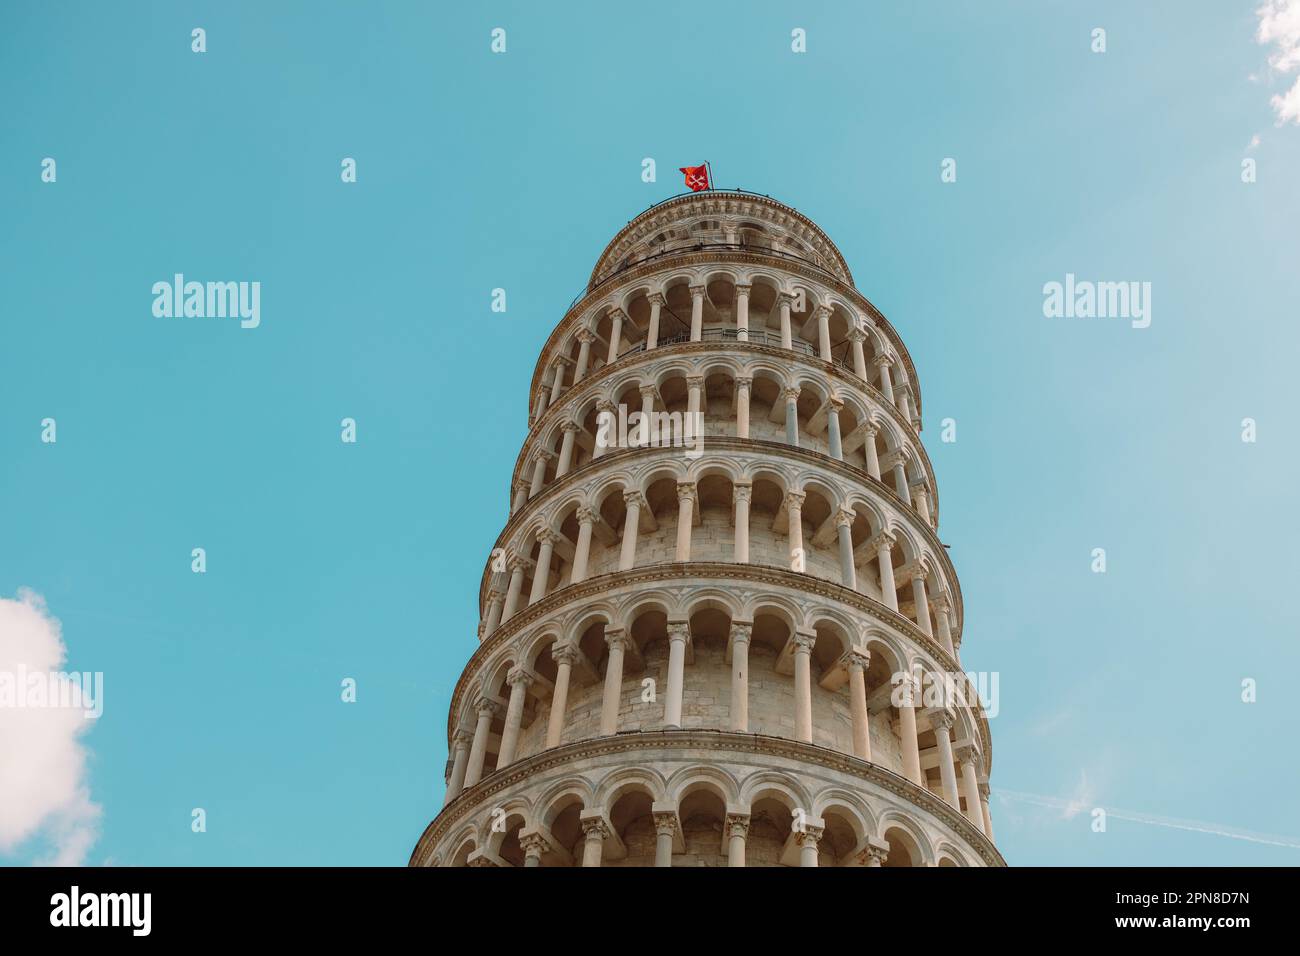 Torre Pendente di Pisa e Cattedrale di Pisa in Piazza dei Miracoli o Piazza dei Miracoli a Pisa. Foto di alta qualità Foto Stock